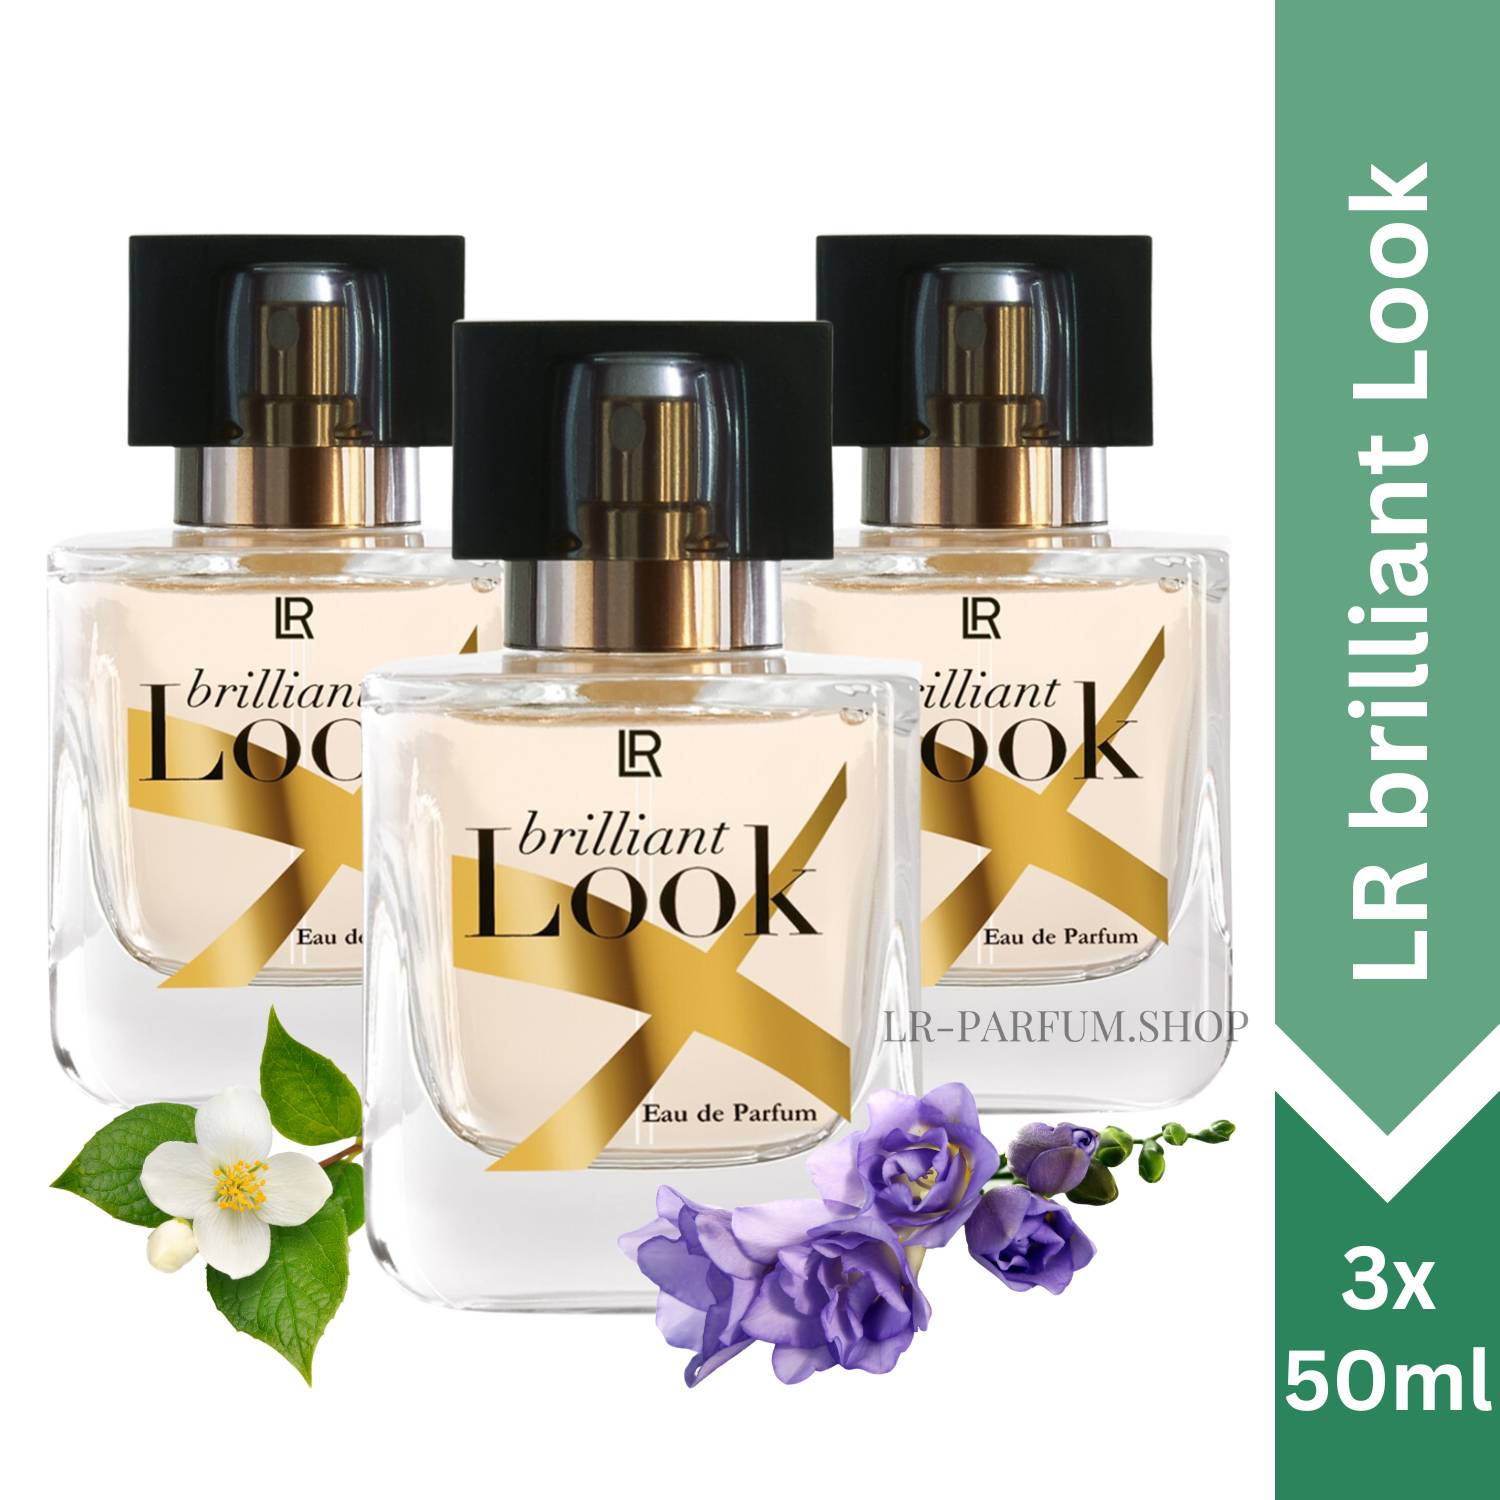 LR Brilliant Look - Eau de Parfum 50ml, 3er Pack (3x50ml) - LR-Parfum.shop